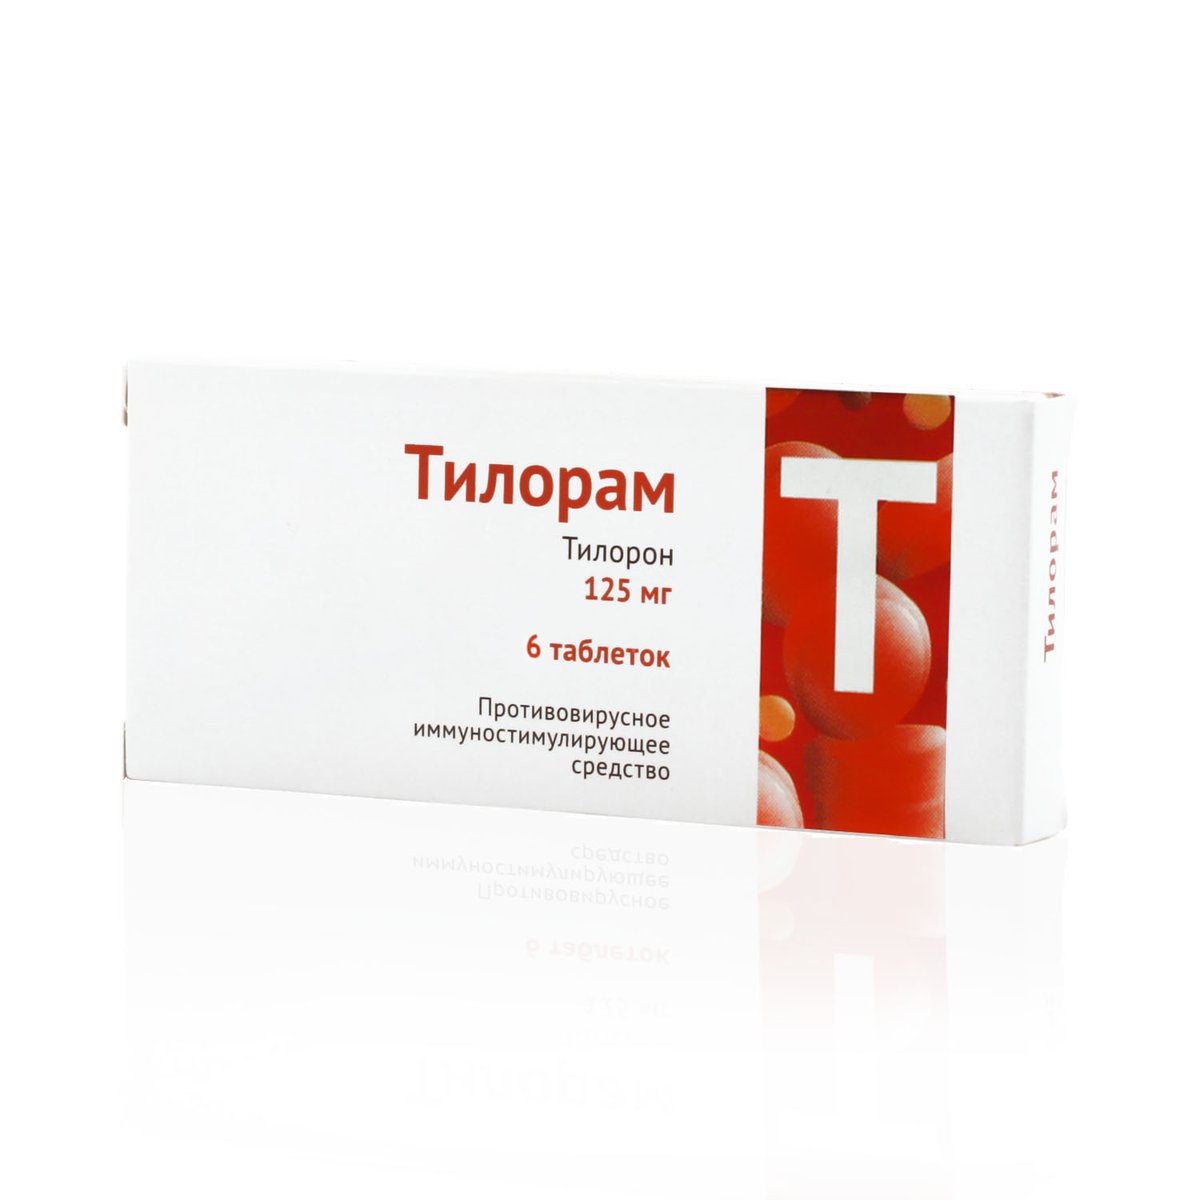 Тилорам (таблетки, 6 шт, 125 мг) - цена,  онлайн  .